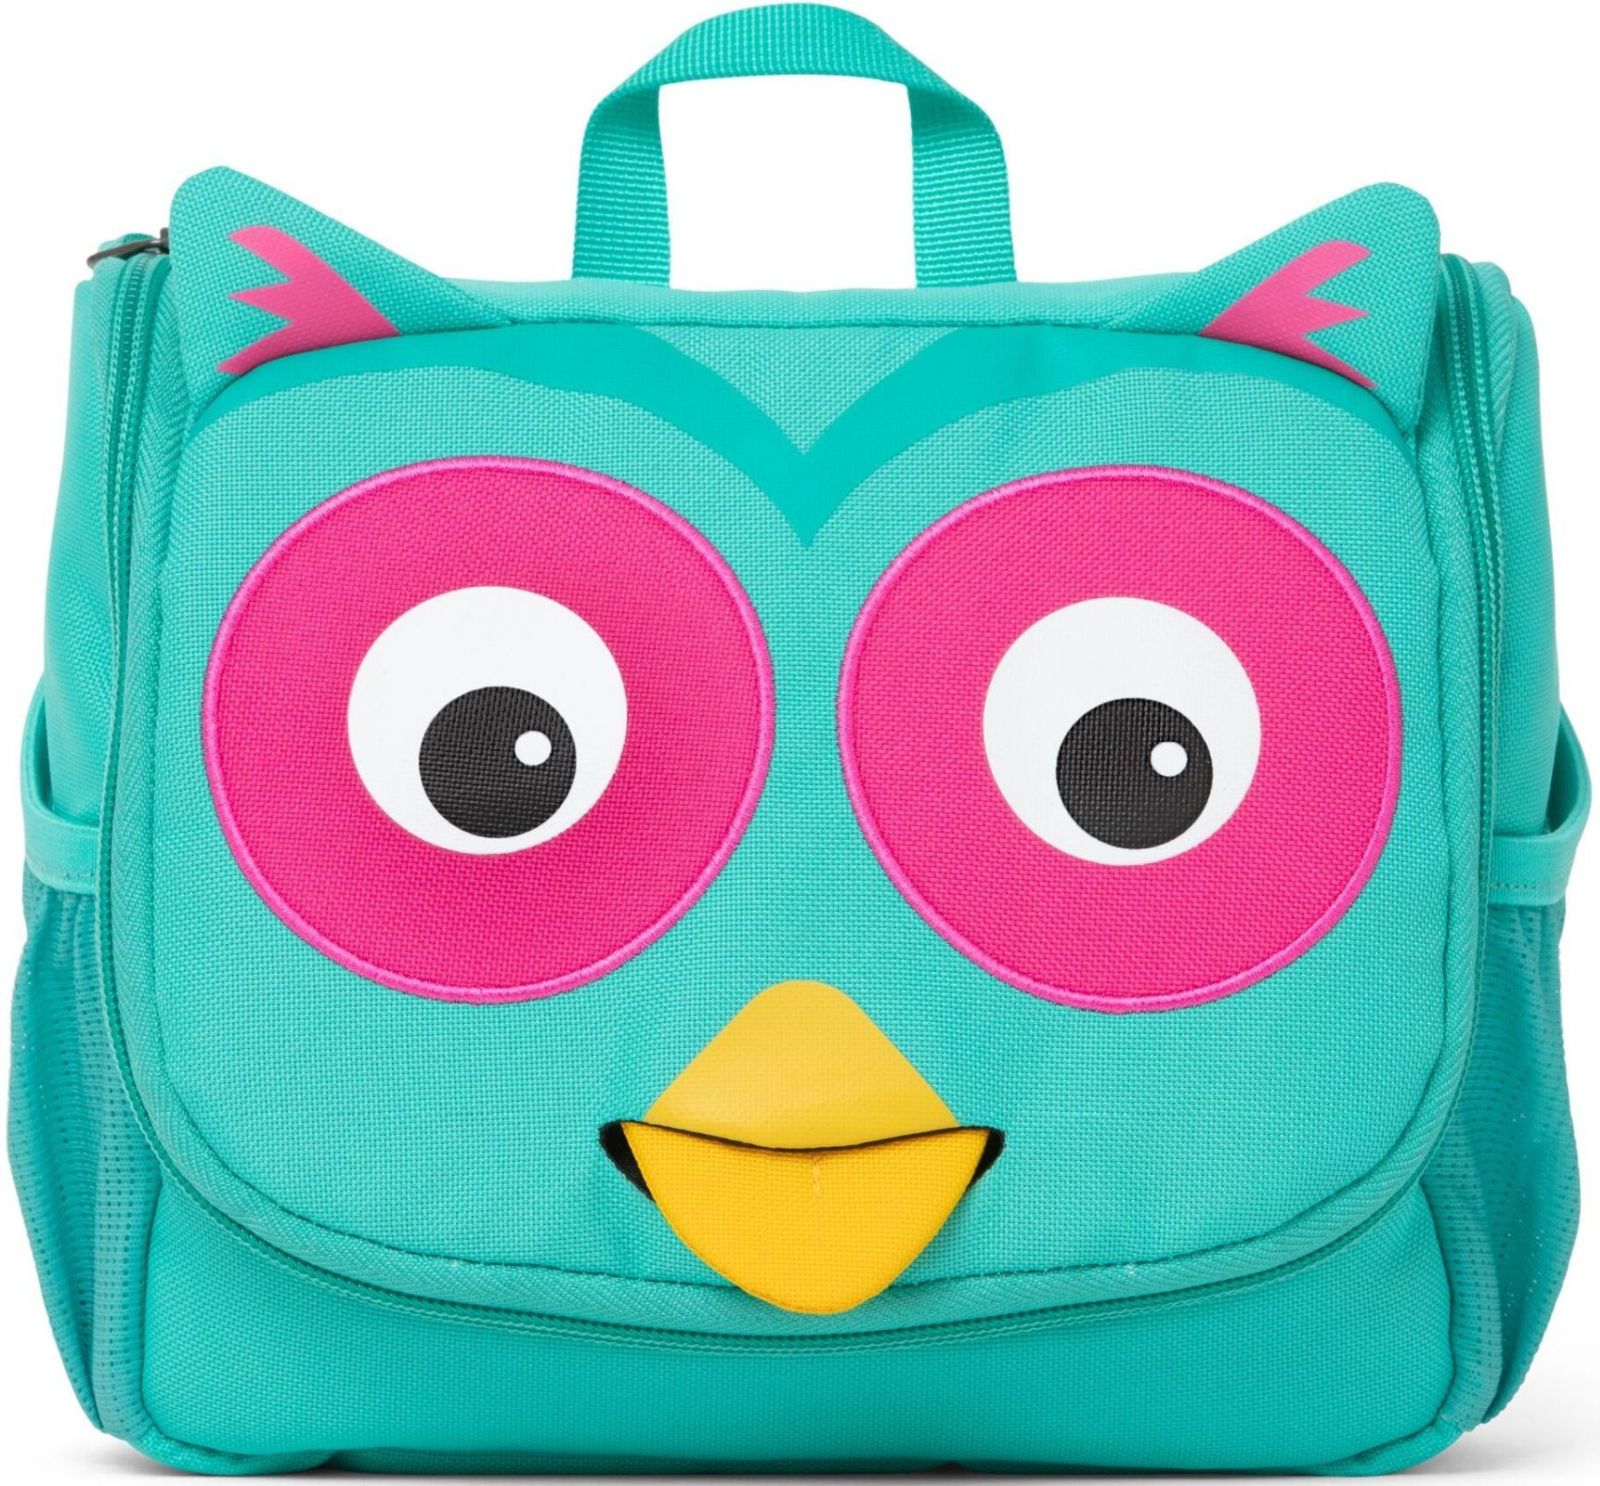 Affenzahn Kids Toiletry Bag Olivia Owl - turquoise